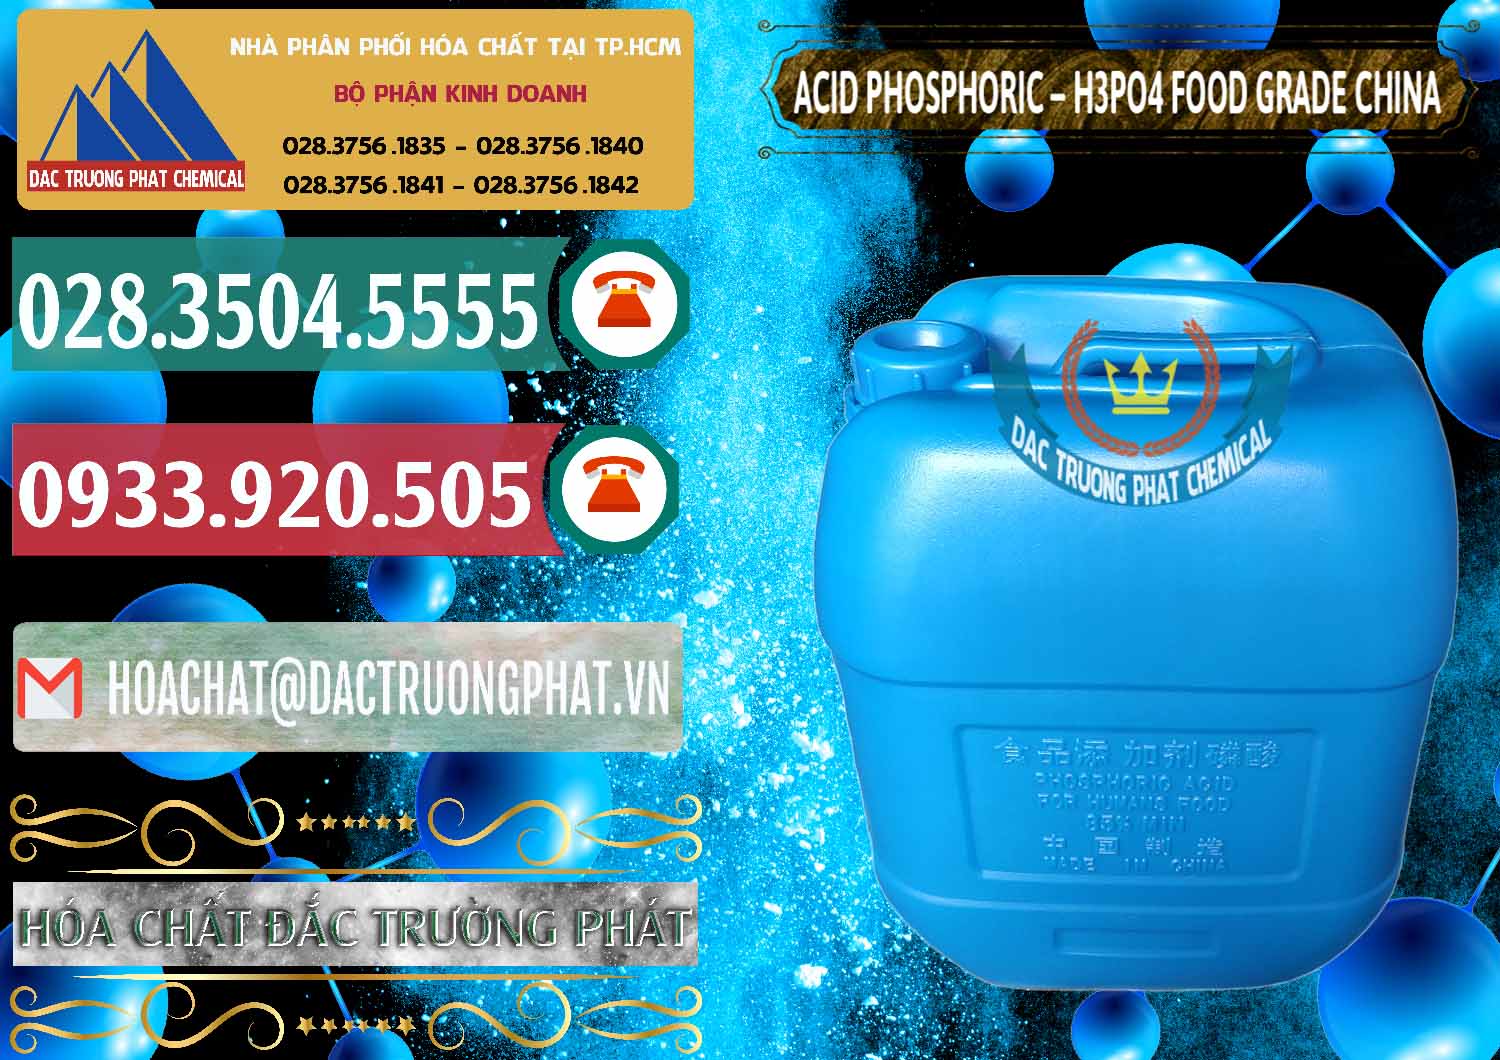 Nơi chuyên cung cấp - bán Acid Phosphoric – H3PO4 85% Food Grade Trung Quốc China - 0015 - Cty chuyên kinh doanh & cung cấp hóa chất tại TP.HCM - muabanhoachat.vn